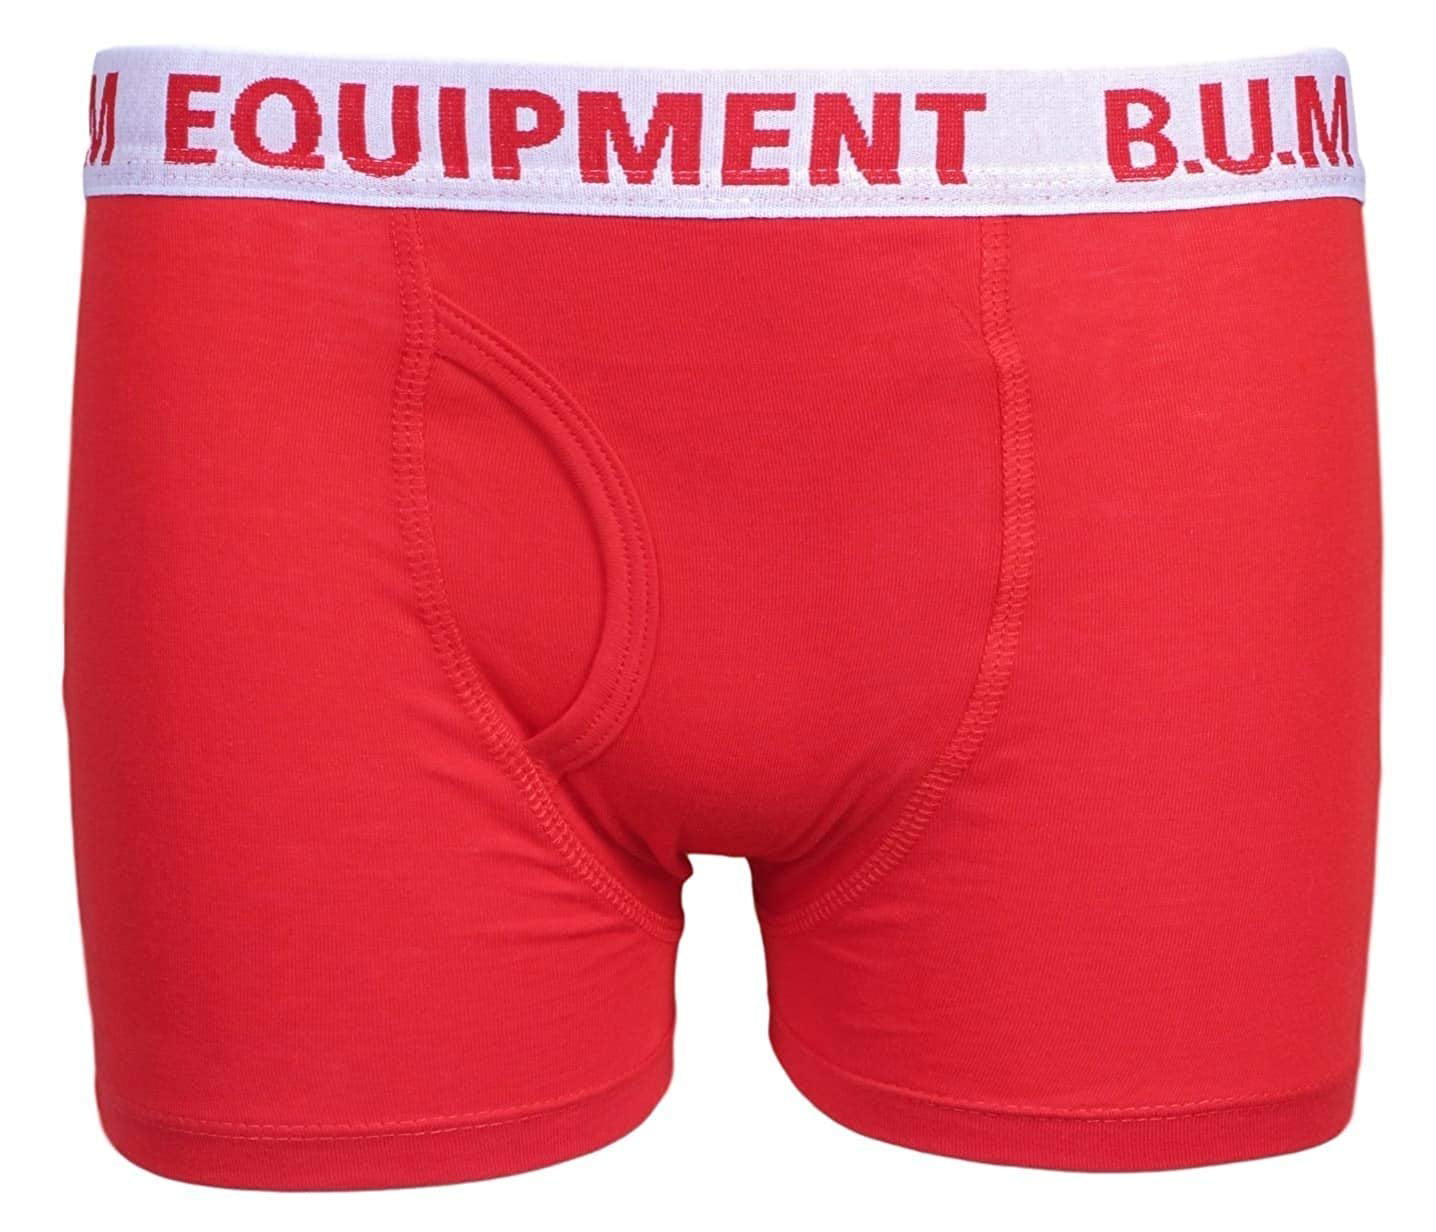 Equipment Boys 10 Pack Solid Boxer Briefs Underwear B.U.M 